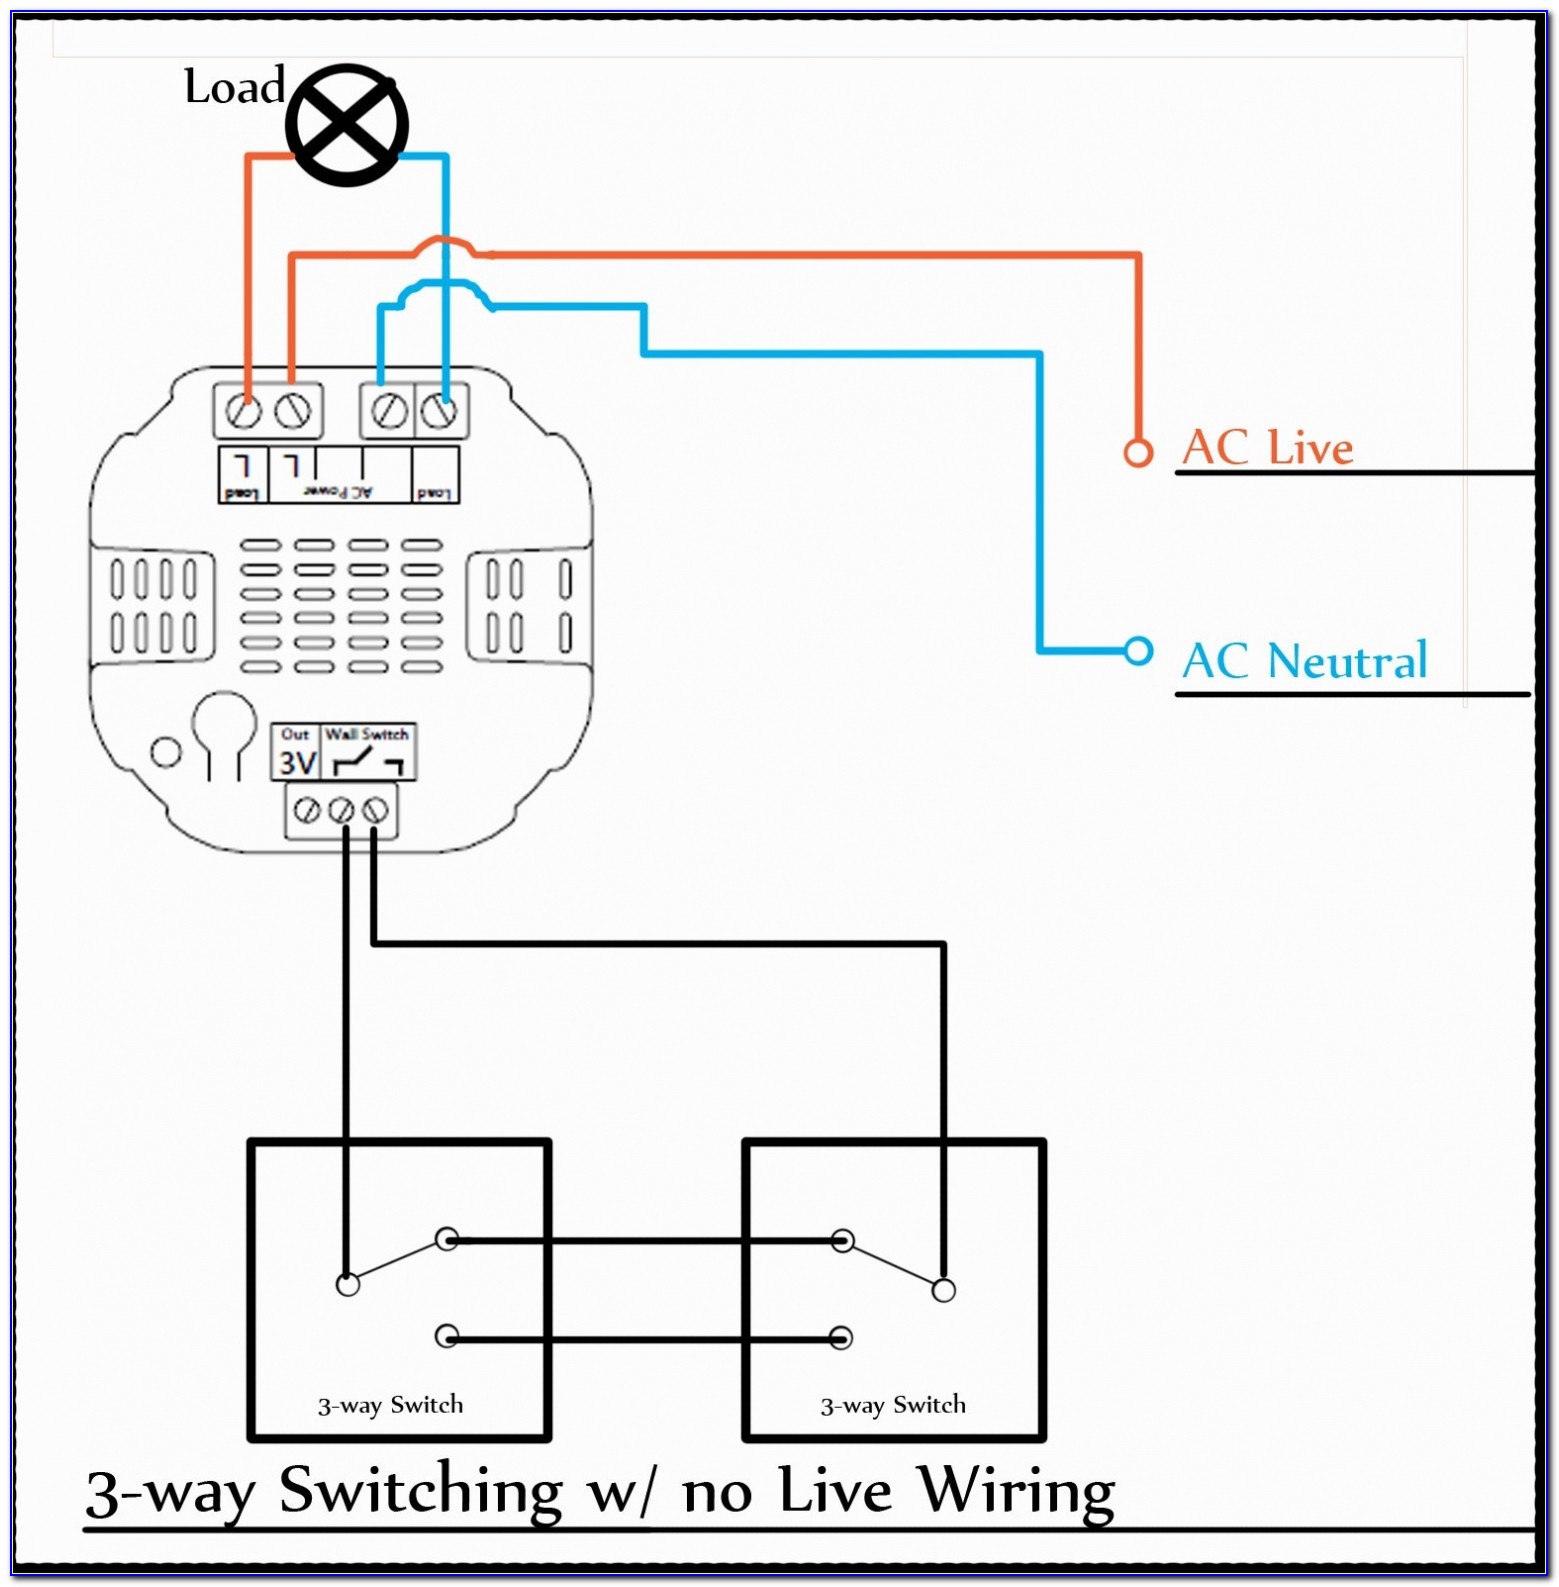 Vintage Air Blower Motor Wiring Diagram